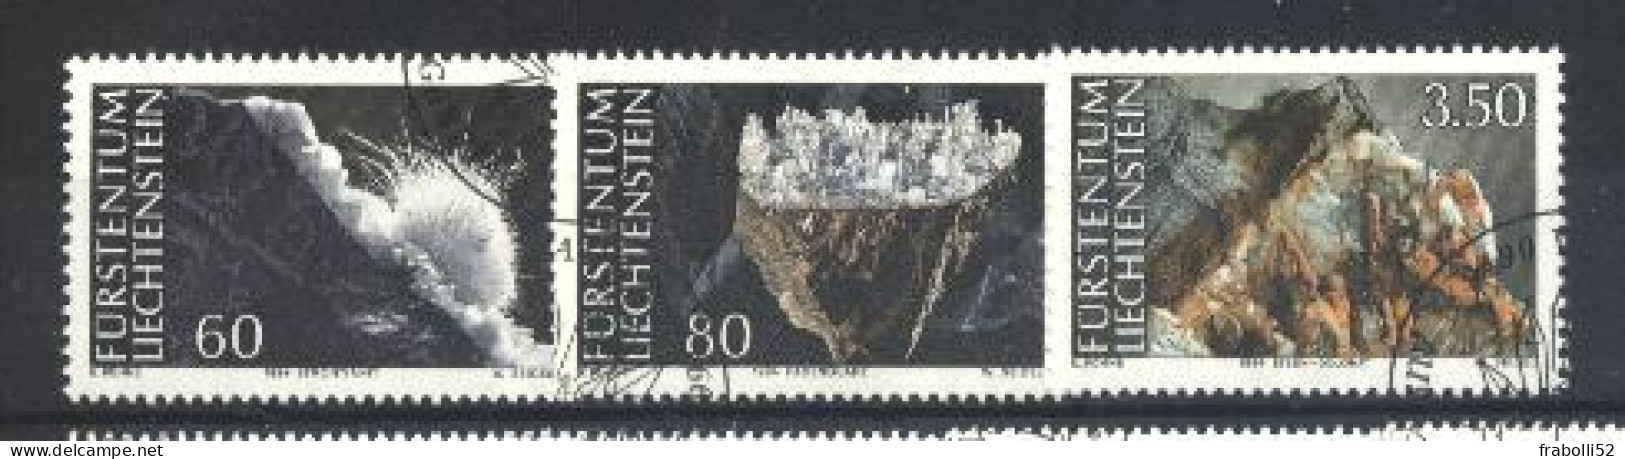 Liechtenstein Usati:  N. 1034-6  Lusso. - Gebraucht